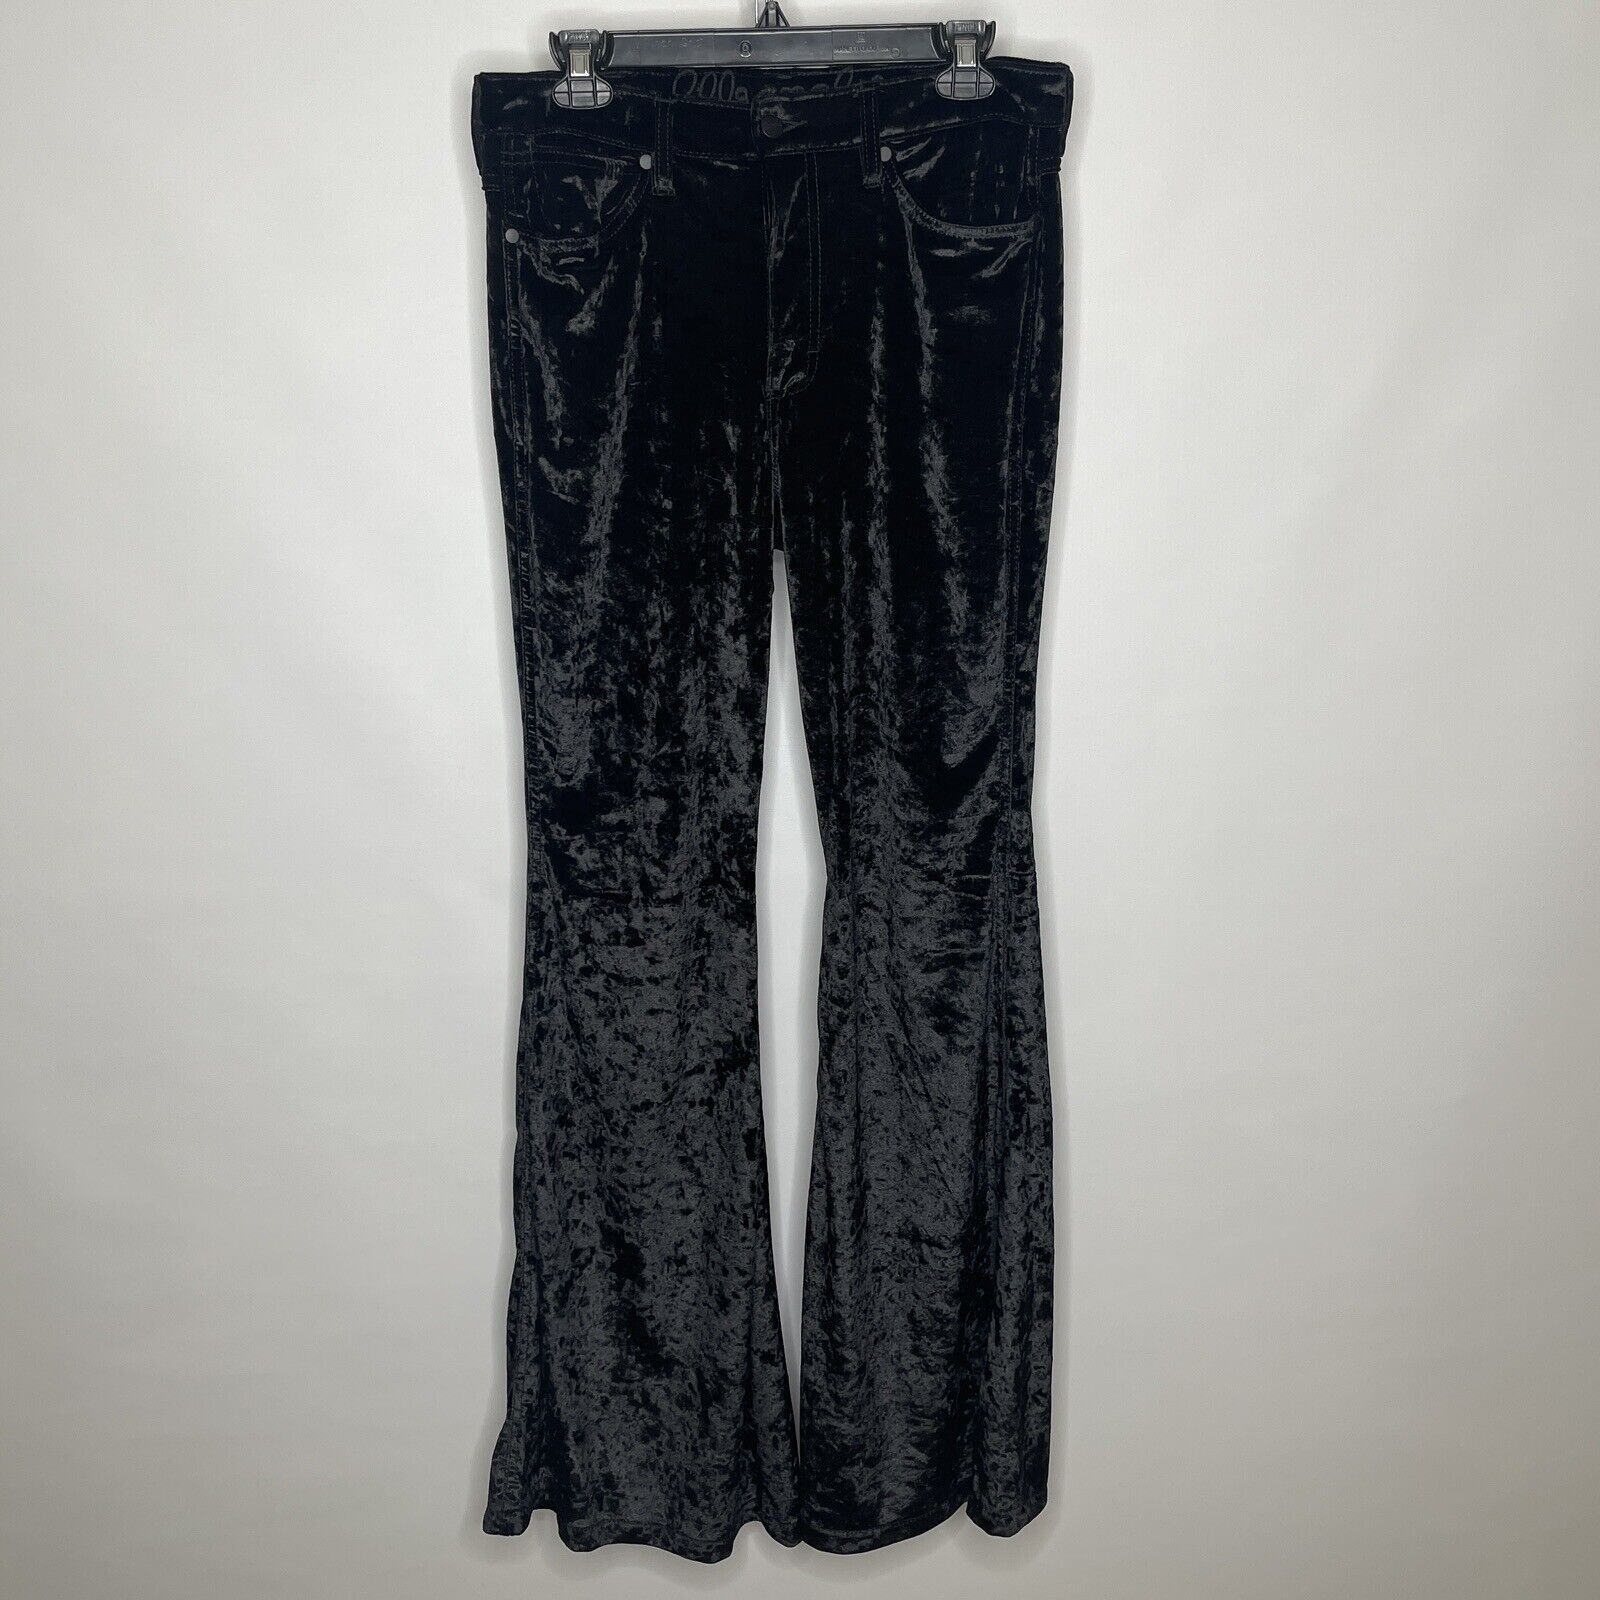 Wrangler Women's Retro Black Velvet Trumpet Flare Jeans Black 30x34